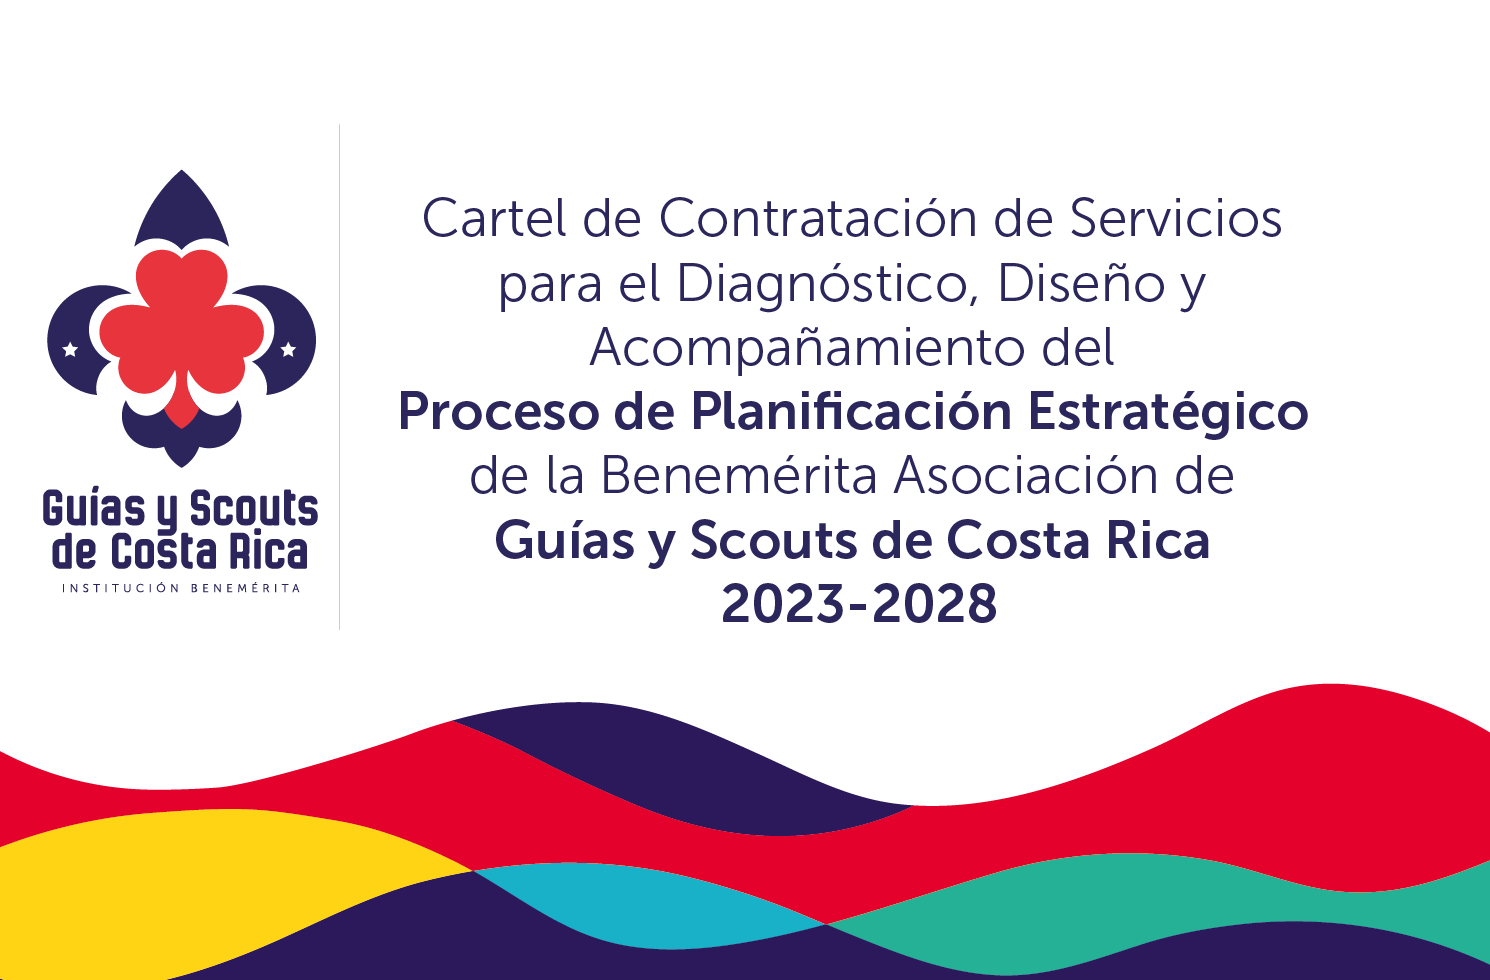 Cartel de Contratación de Servicios para el Diagnóstico, Diseño y Acompañamiento del Proceso de Planificación Estratégico de la Benemérita Asociación de Guías y Scouts de Costa Rica 2023-2028